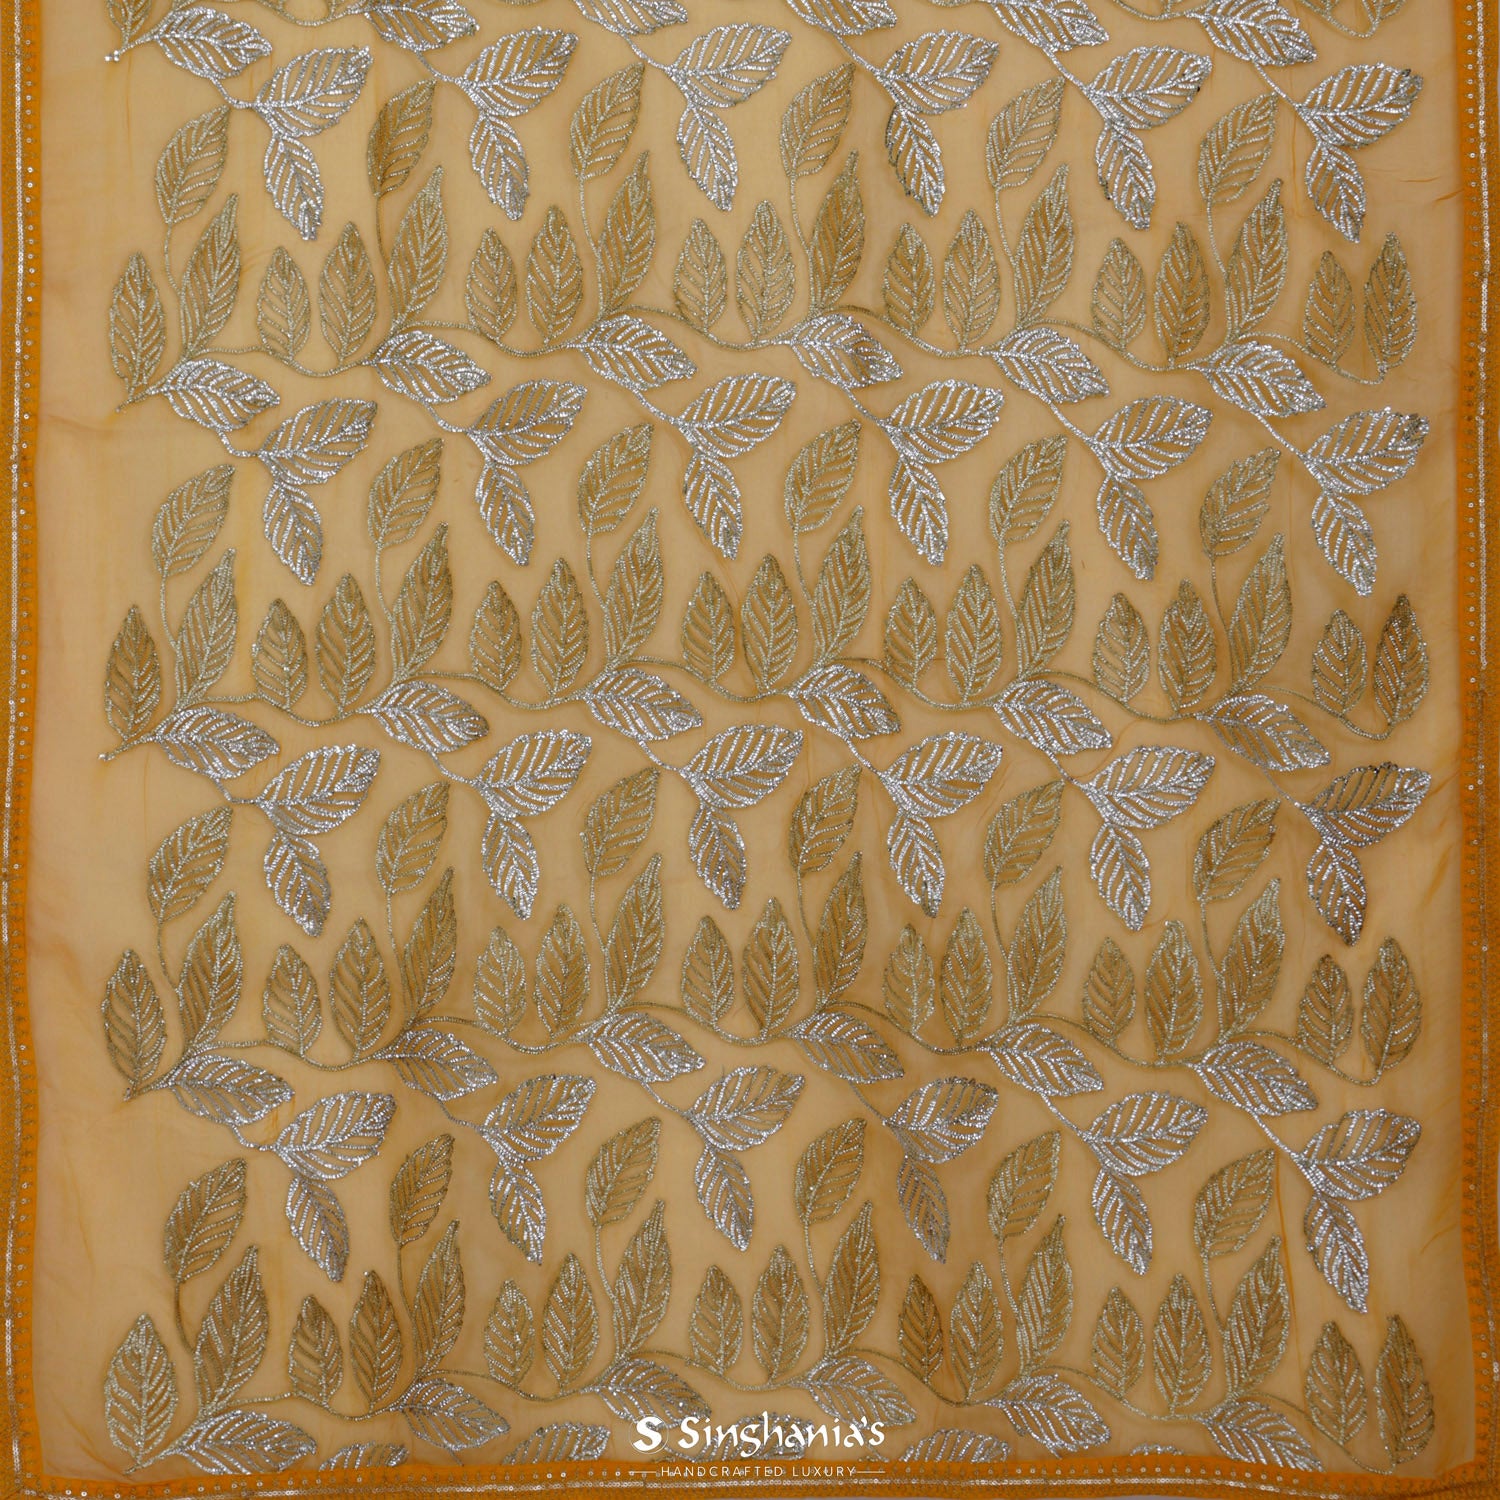 Hunyadi Yellow Printed Organza Saree With Floral Pattern